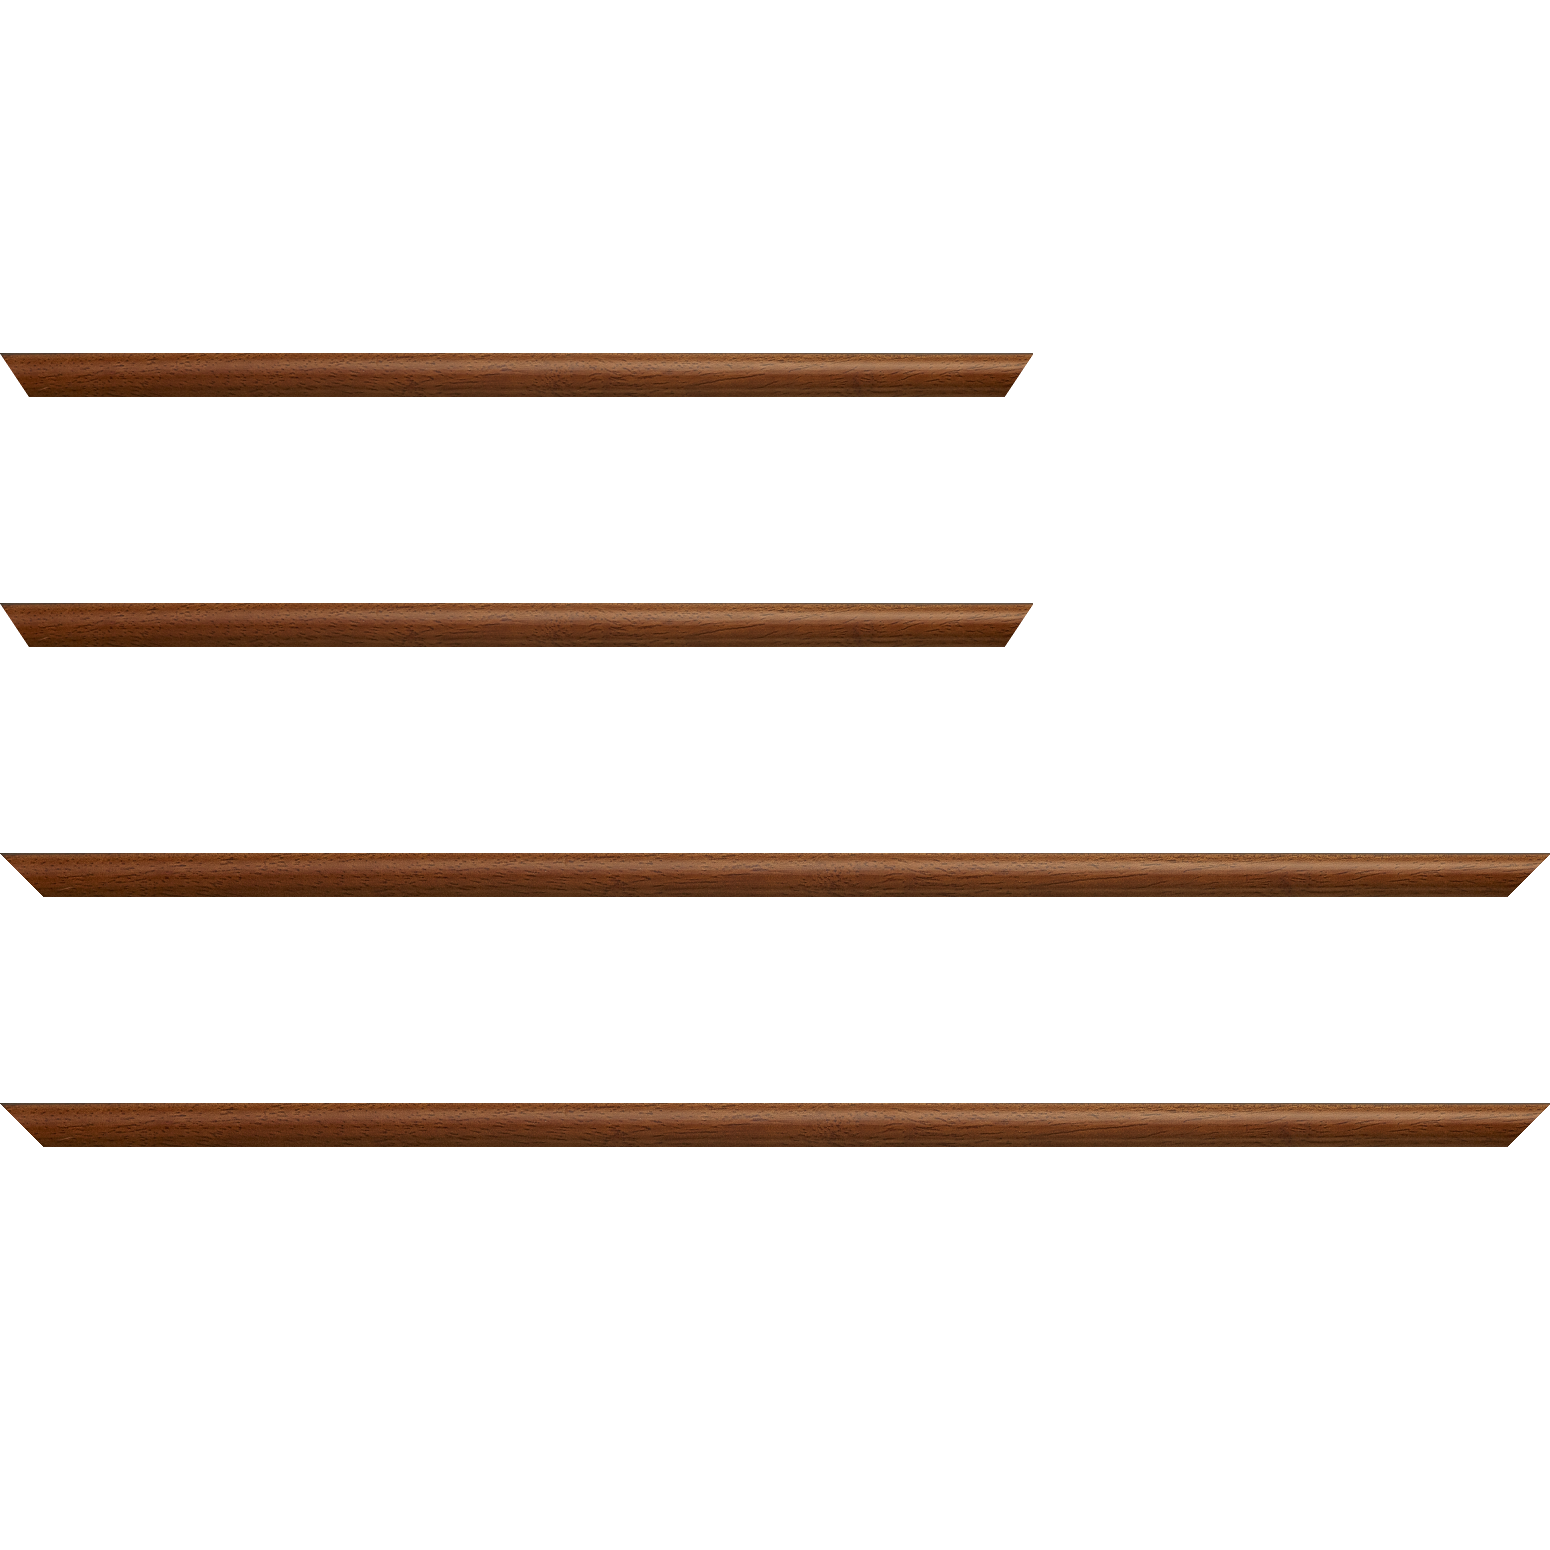 Baguette bois profil demi rond largeur 1.5cm couleur marron ton bois extérieur ébène